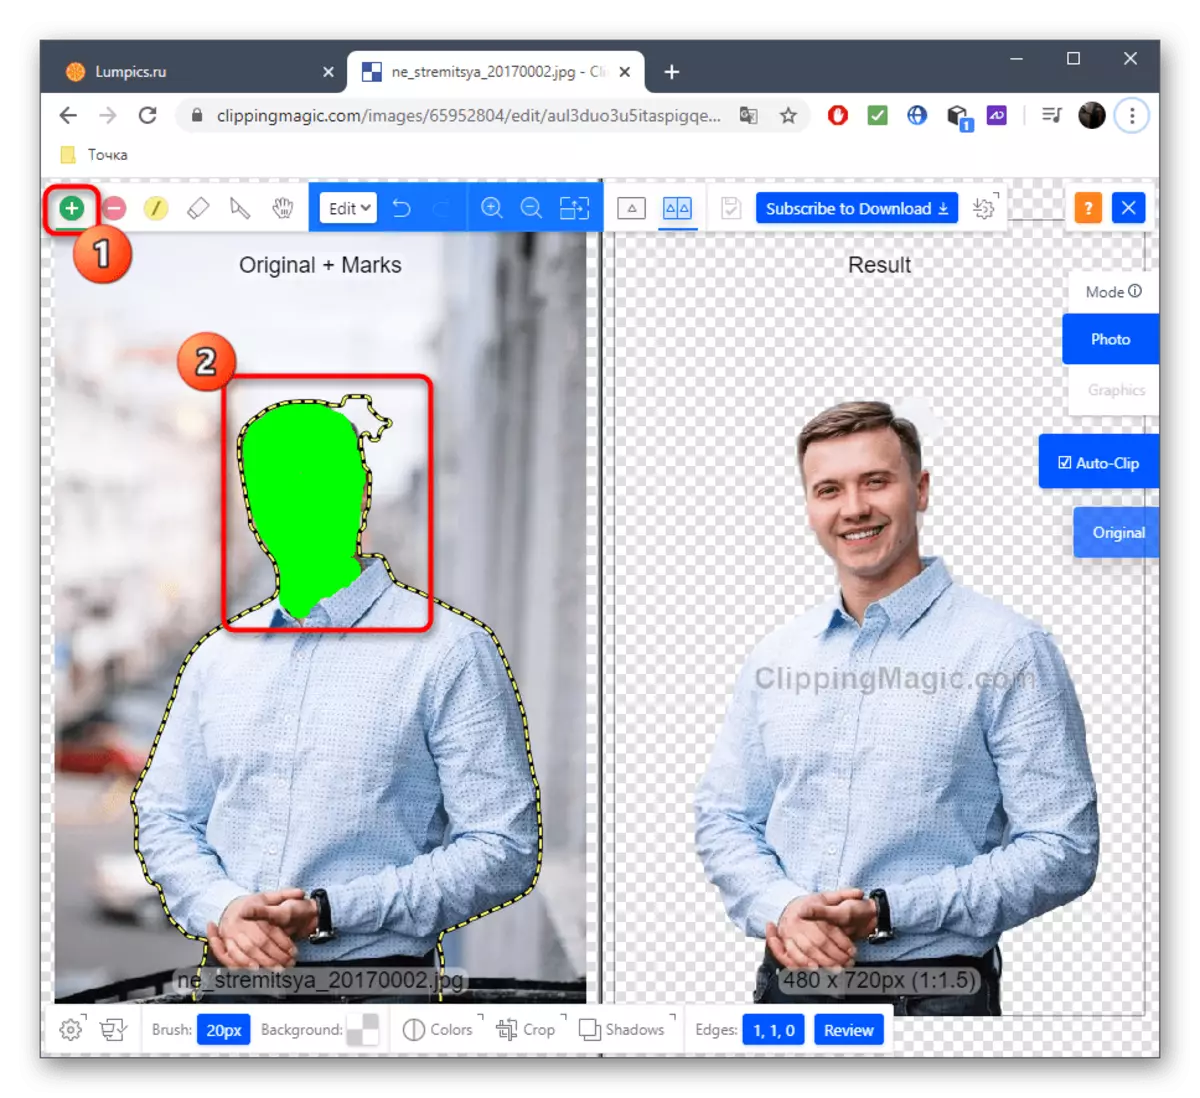 Udvælgelse af værktøj til skæring med billeder gennem en online ClippingMagic Service